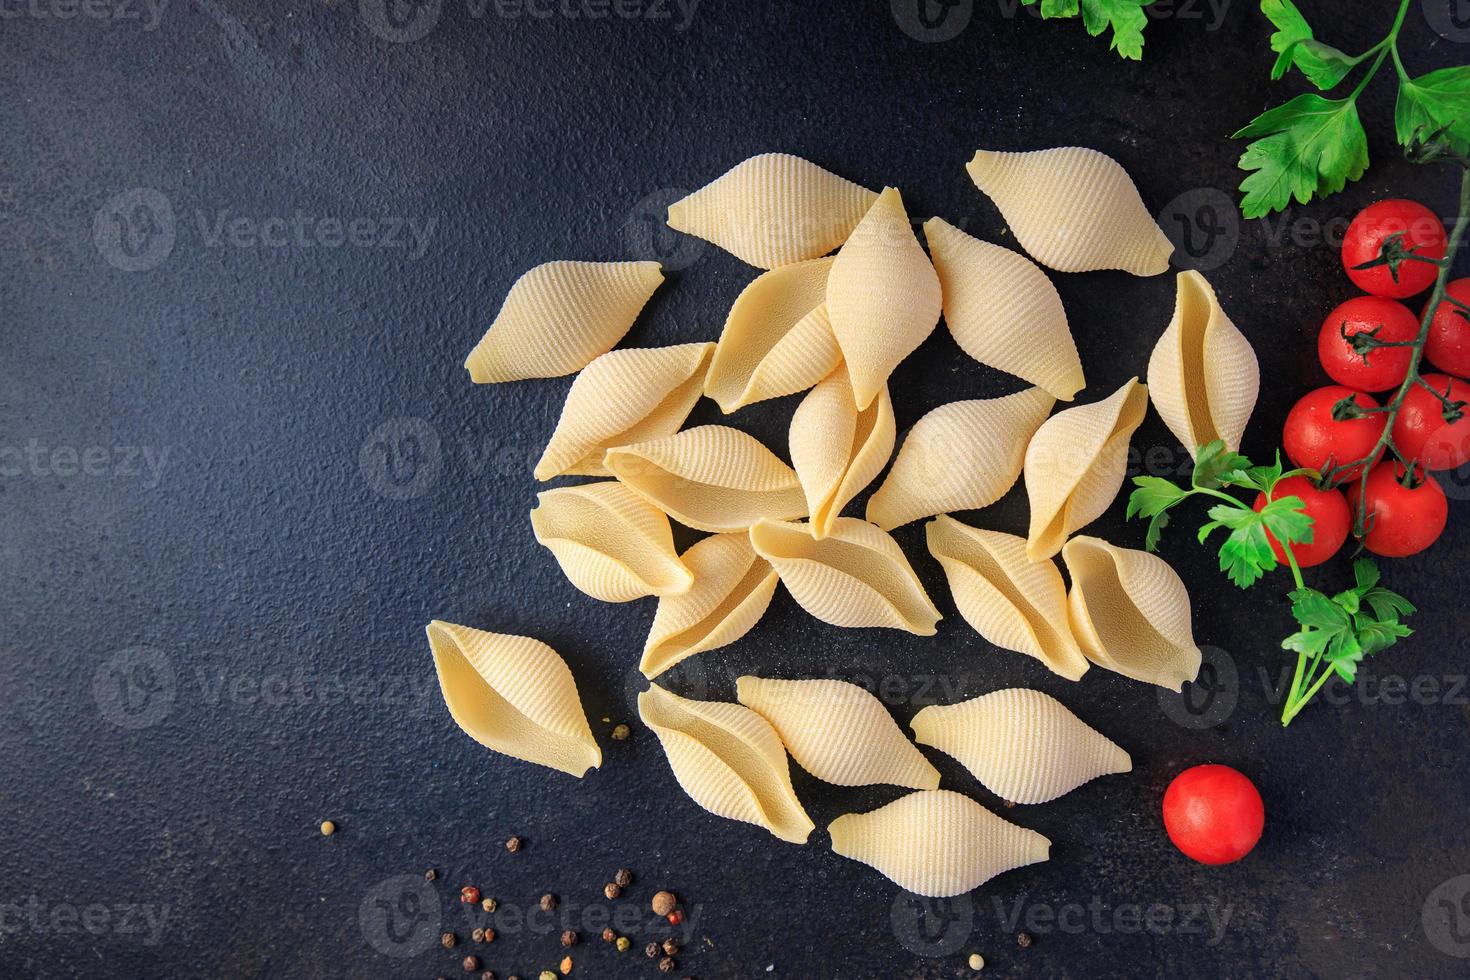 conchiglie pasta rå big shell durumvete semolamjöl foto